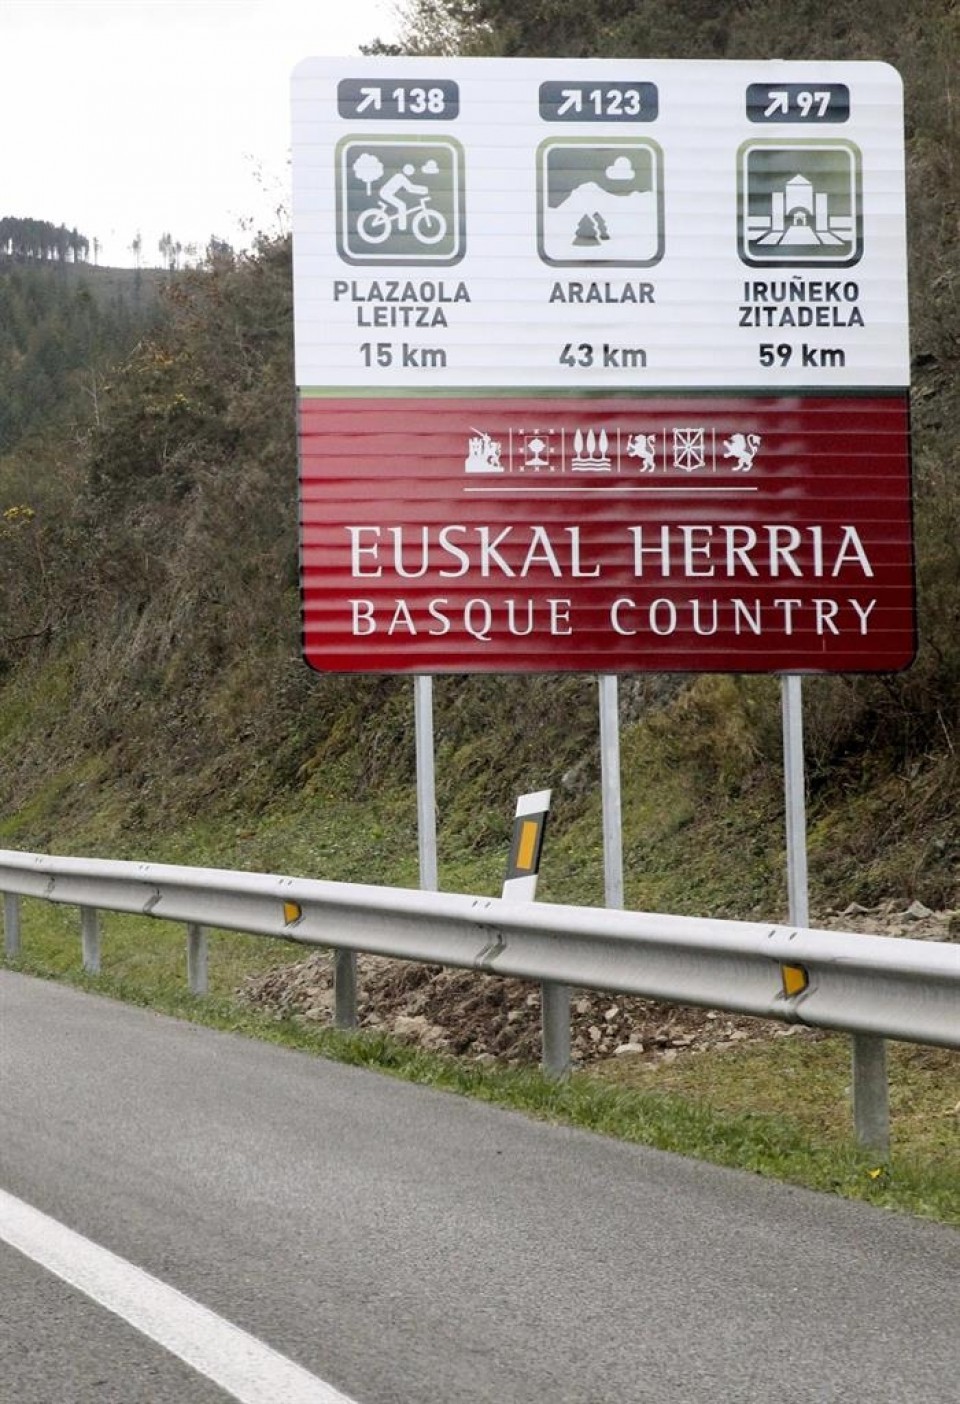 La Diputación de Gipuzkoa ha colocado varias señales como esta en las carreteras. Foto: EFE